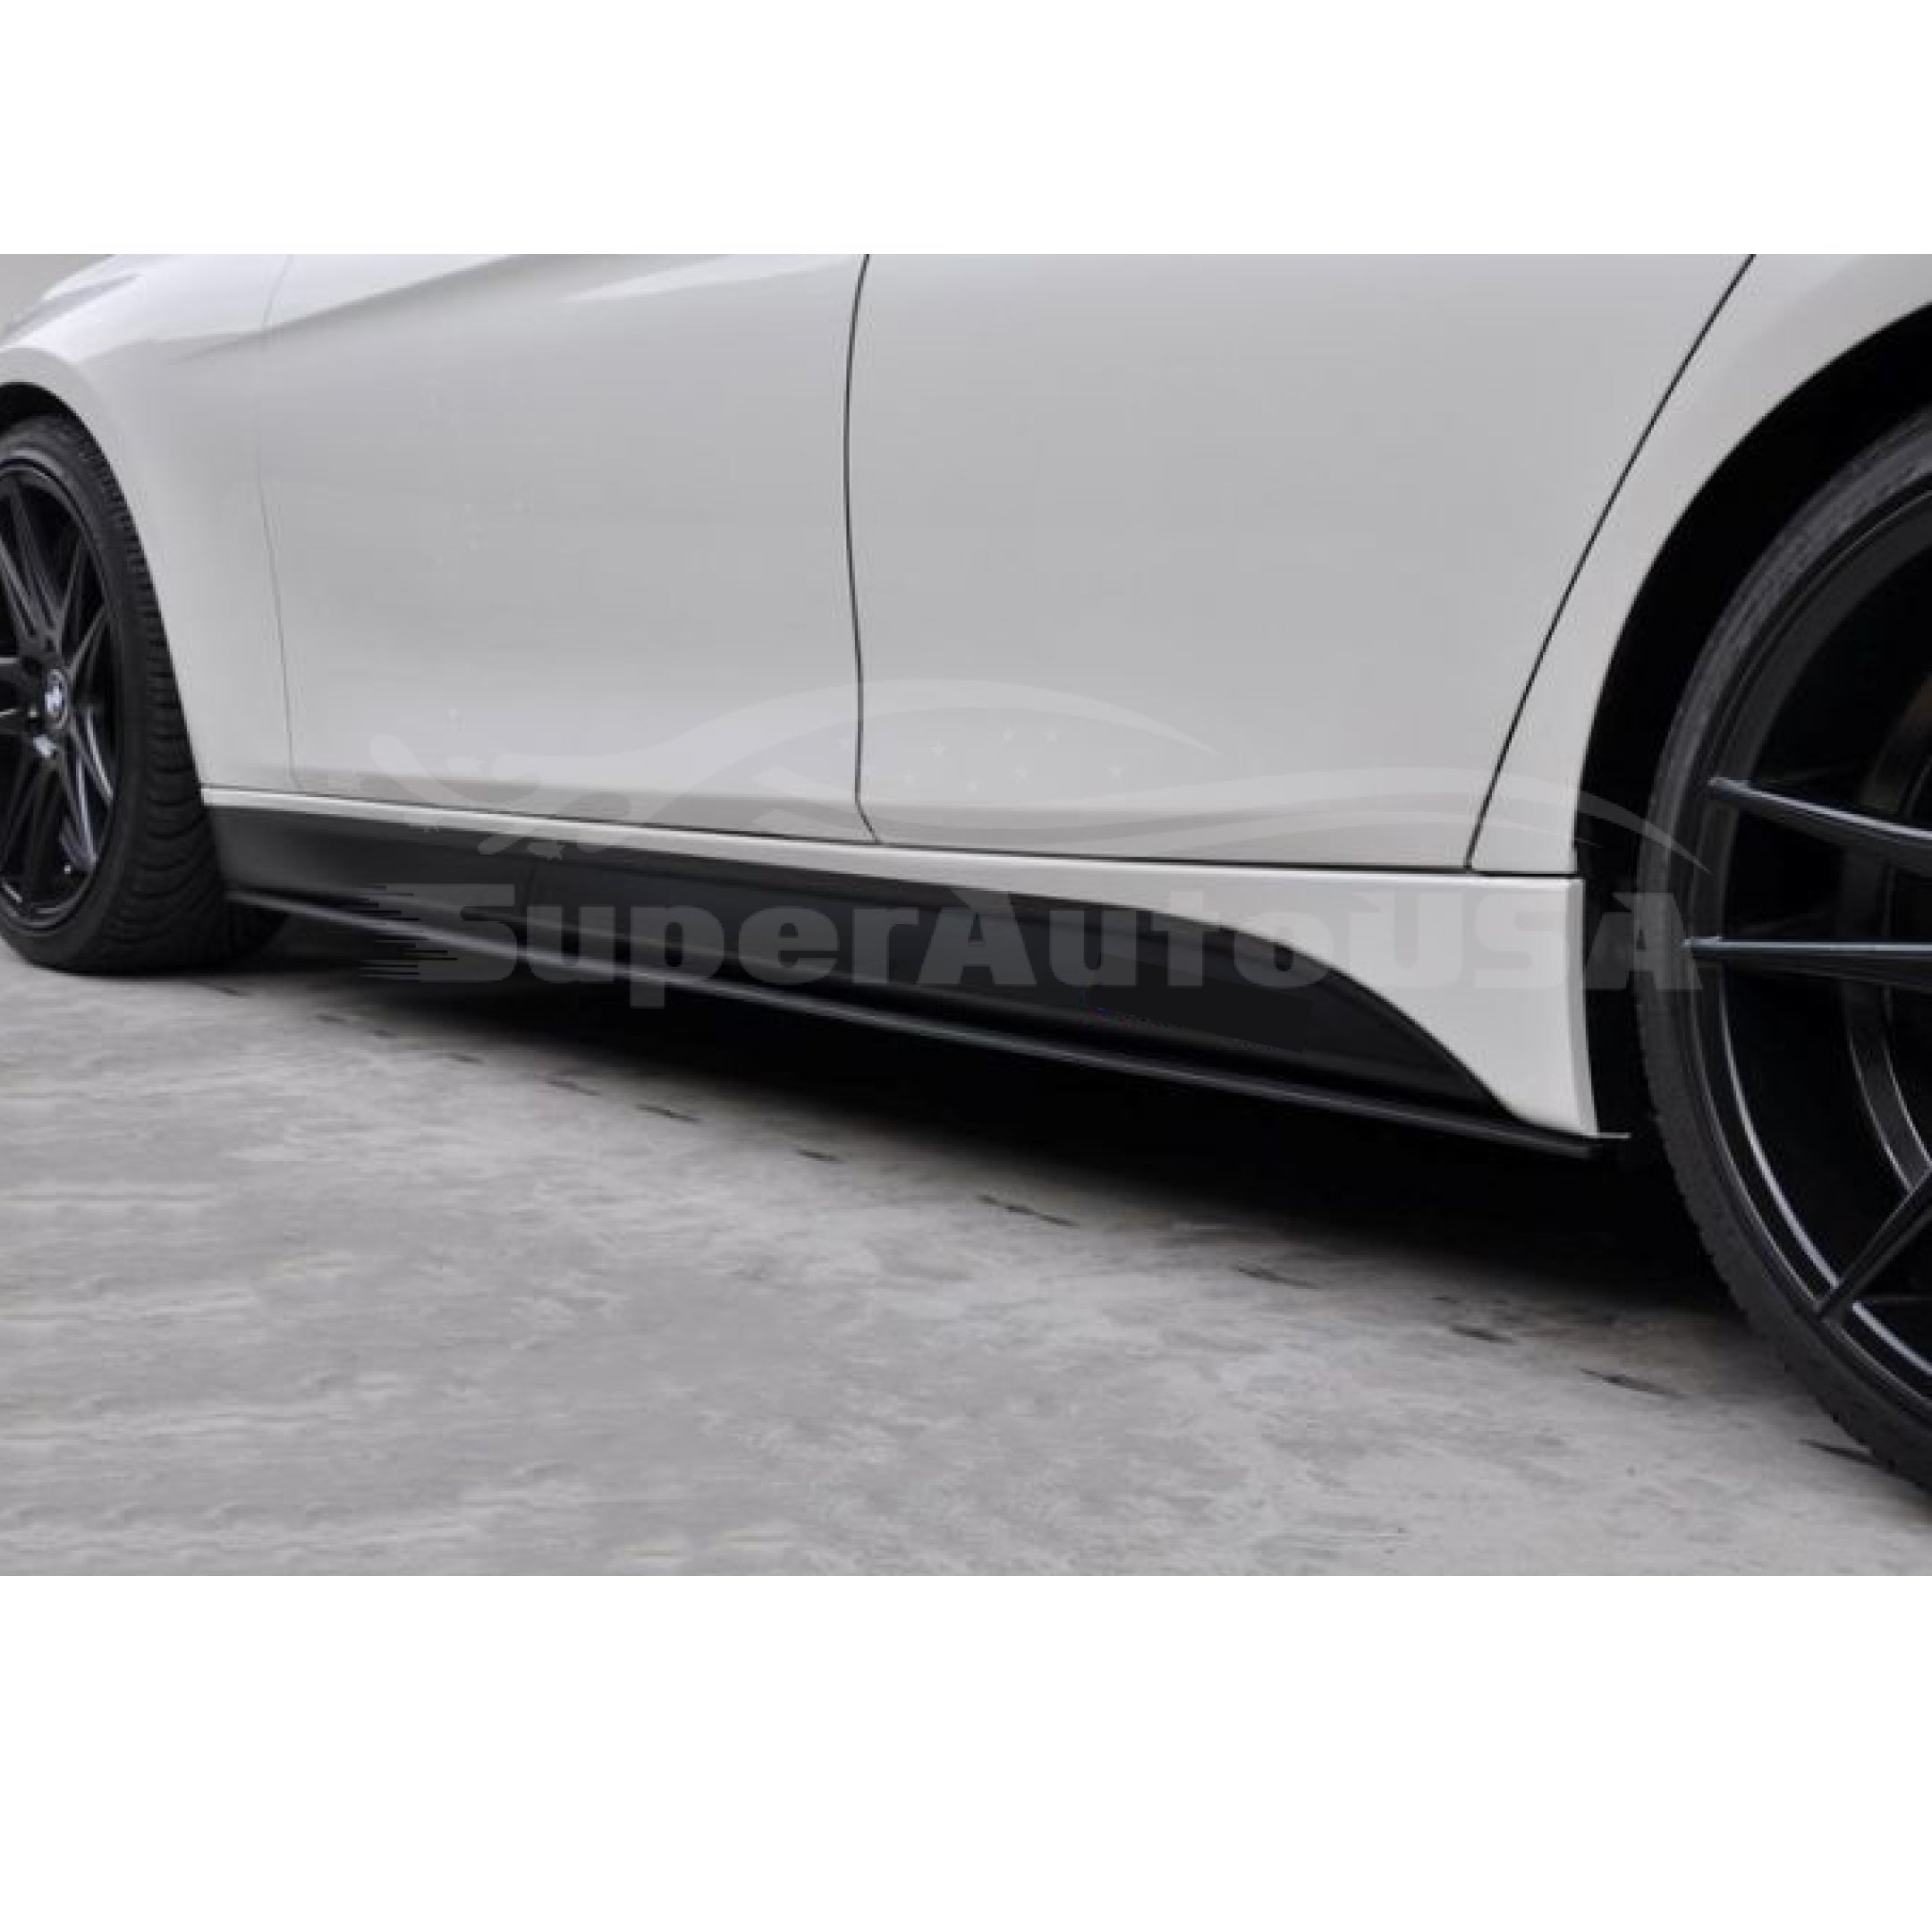 For 11-16 BMW 5 Series F10 F11 M5 Sedan Gloss Black Side Skirt Extension Spoiler